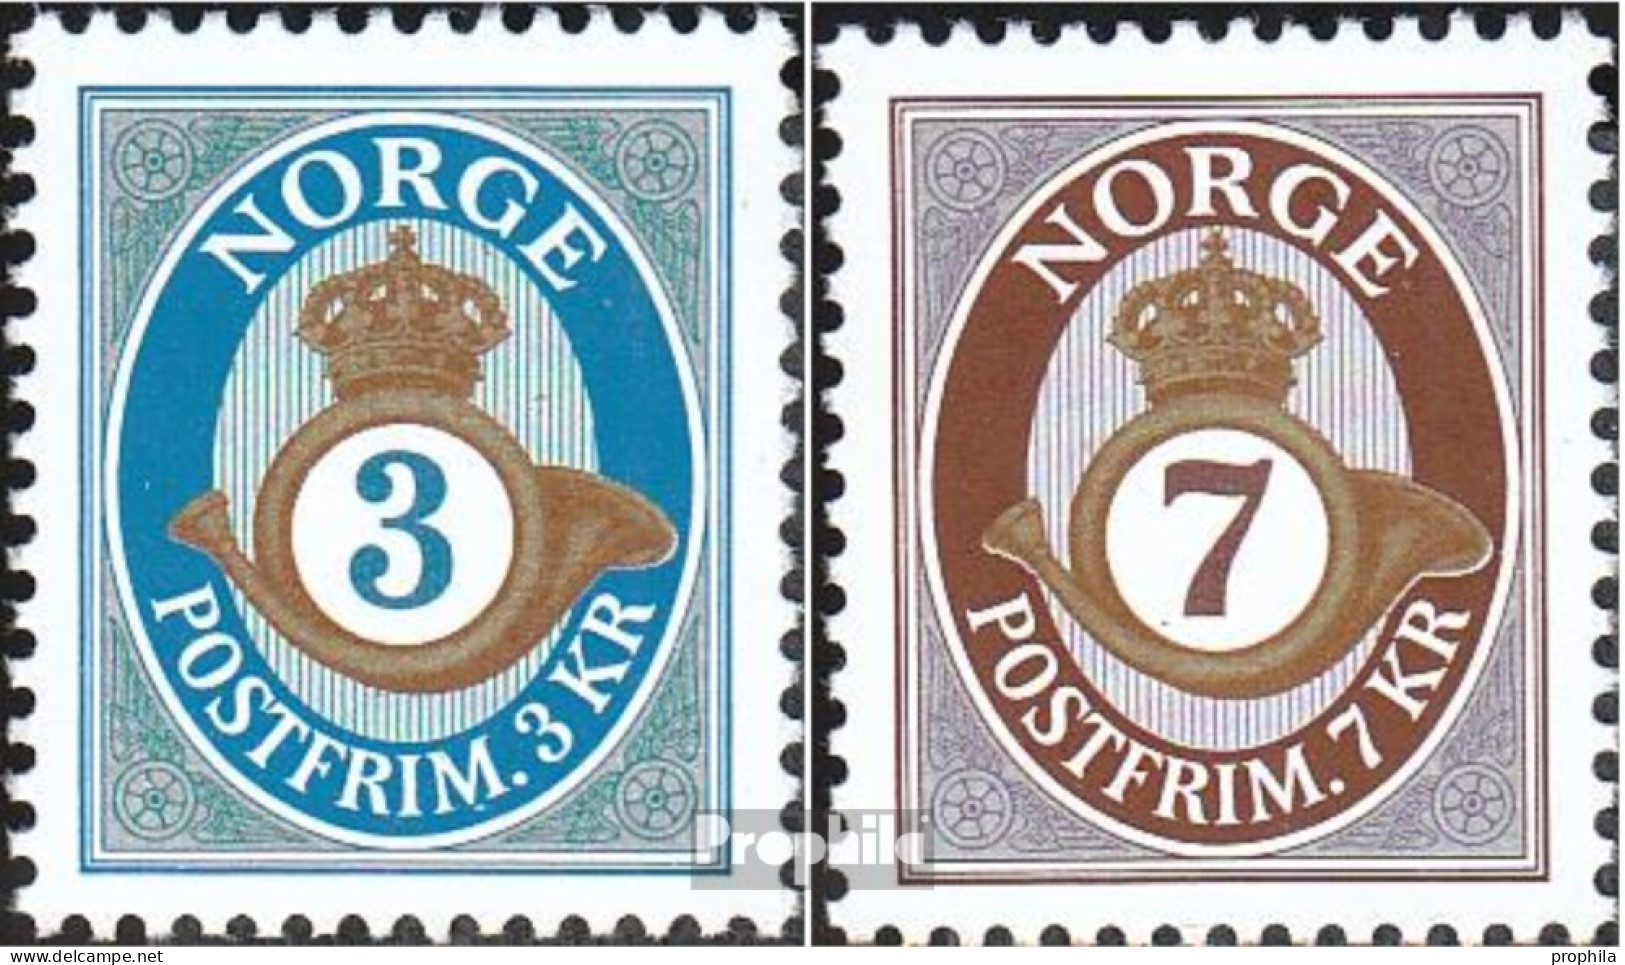 Norwegen 1529-1530 (kompl.Ausg.) Postfrisch 2005 Posthorn - Ungebraucht